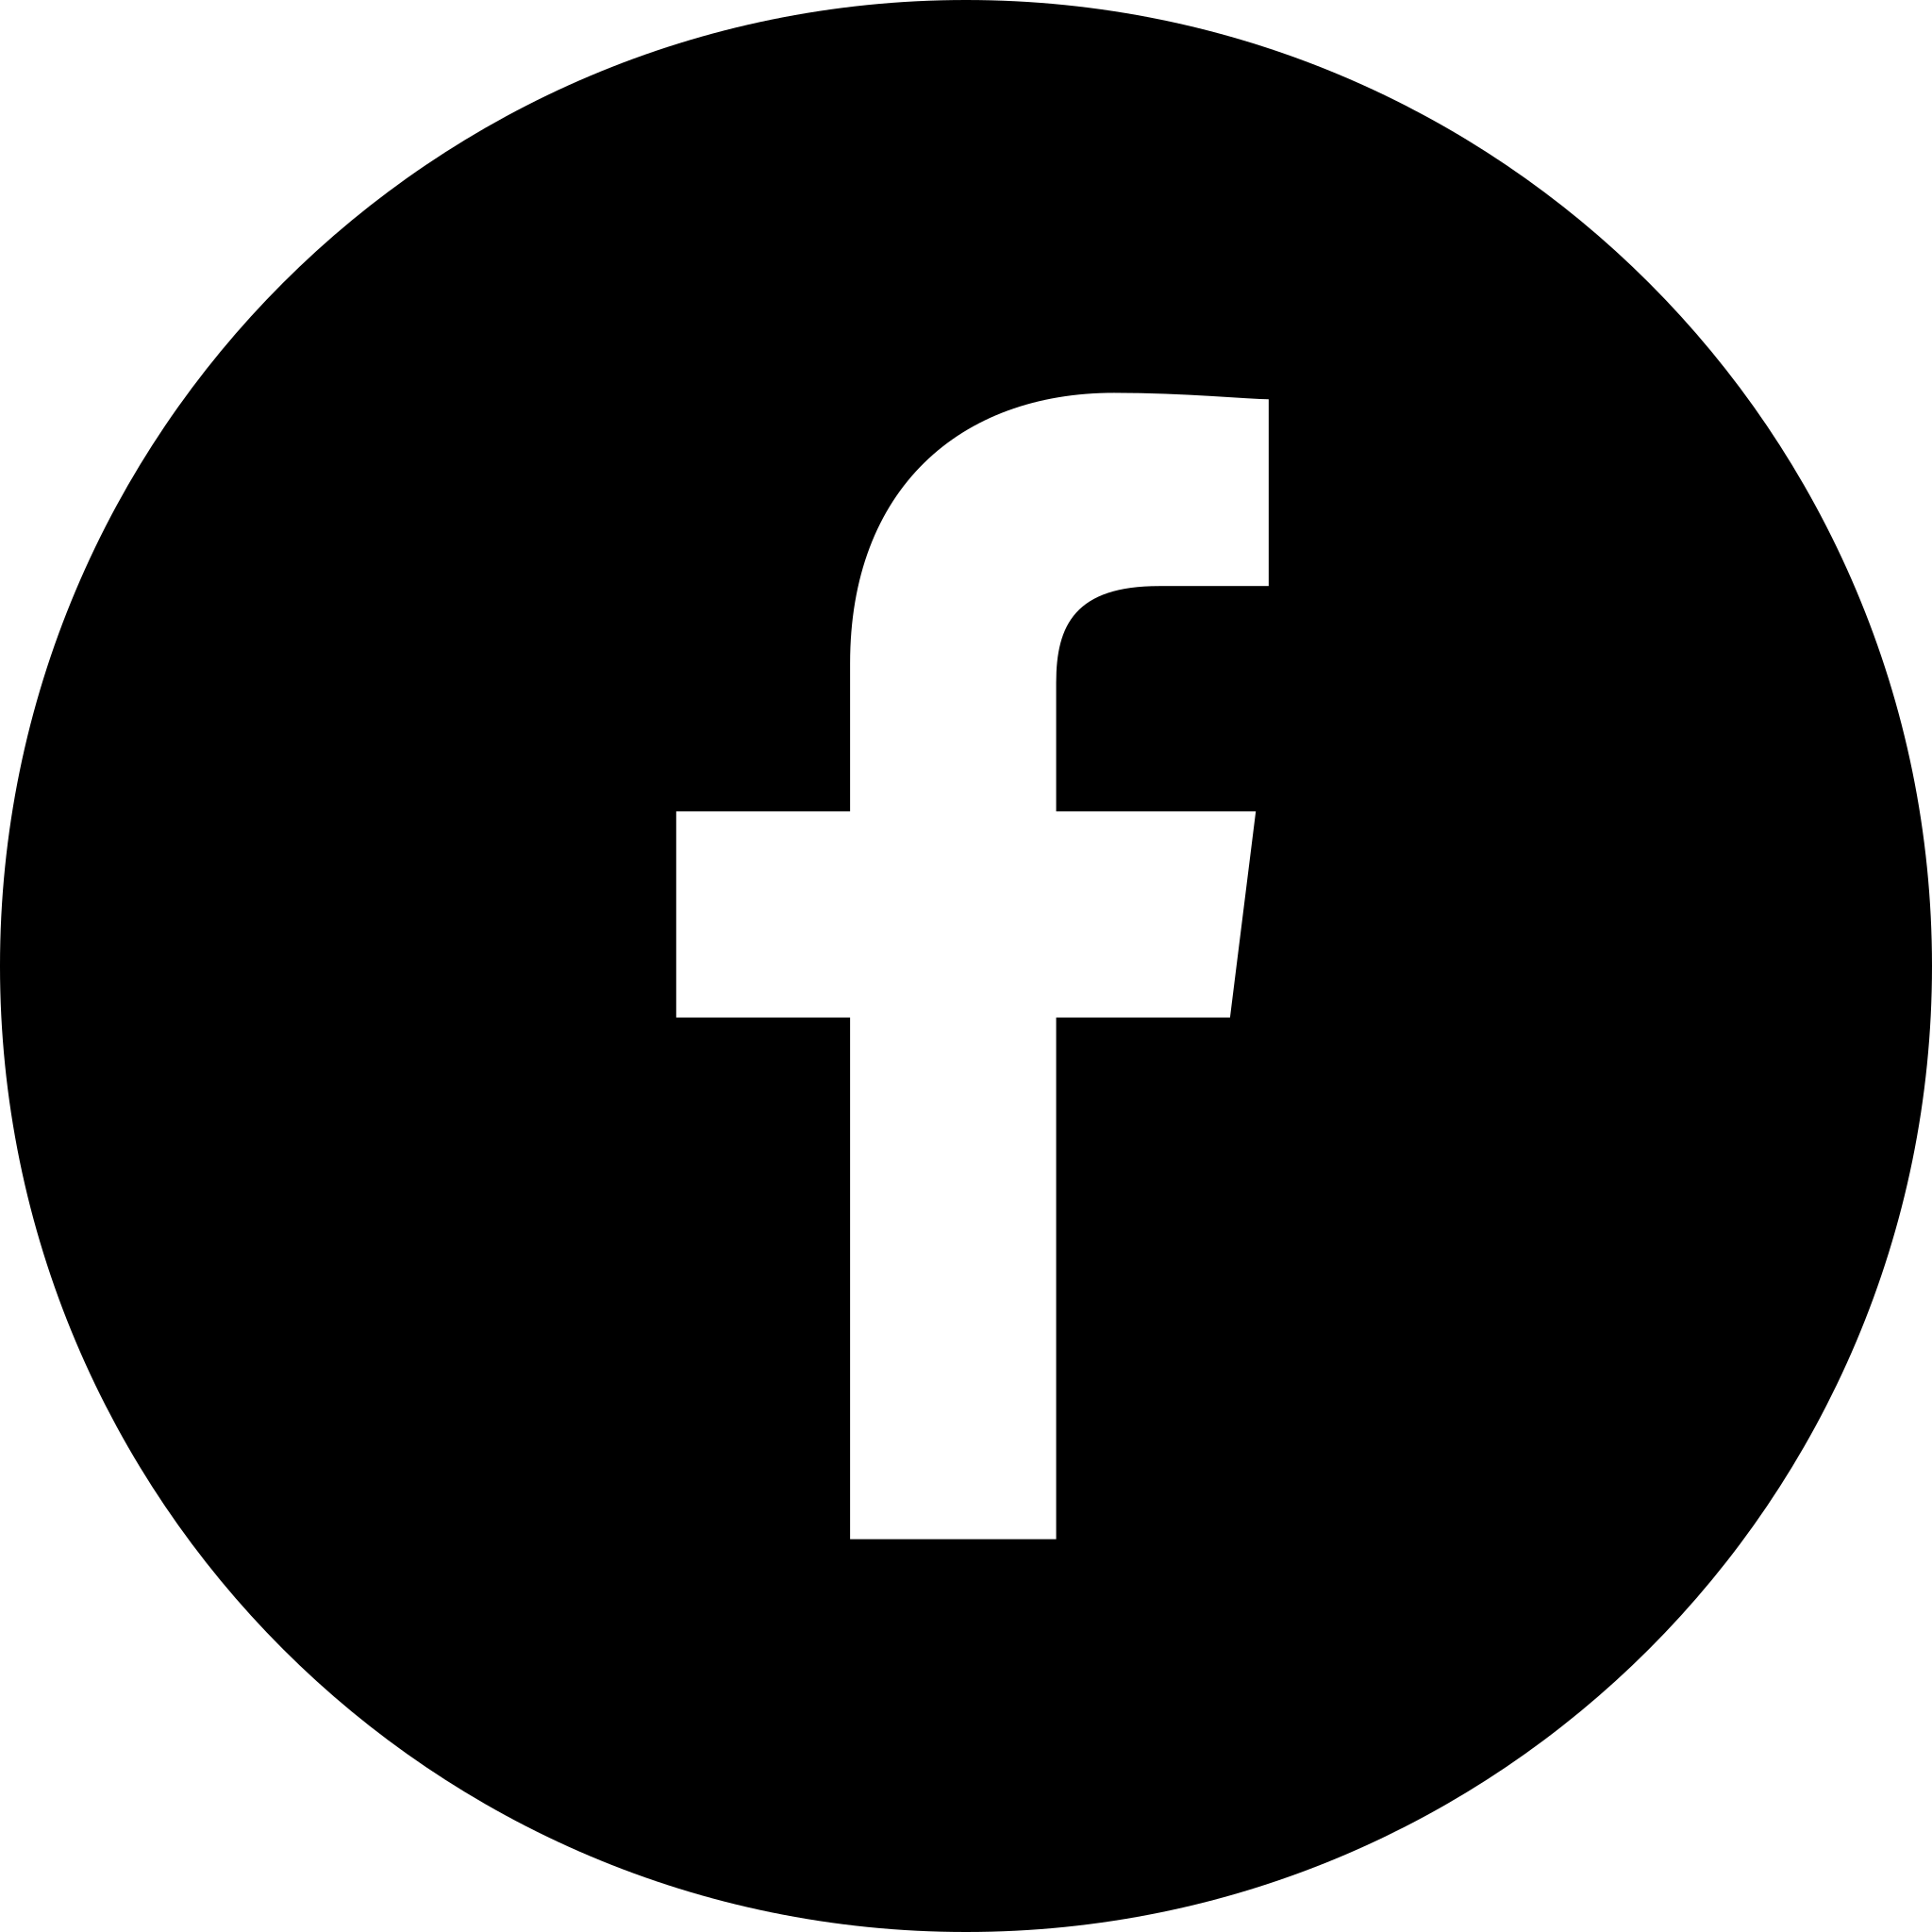 facebook blk wht logo